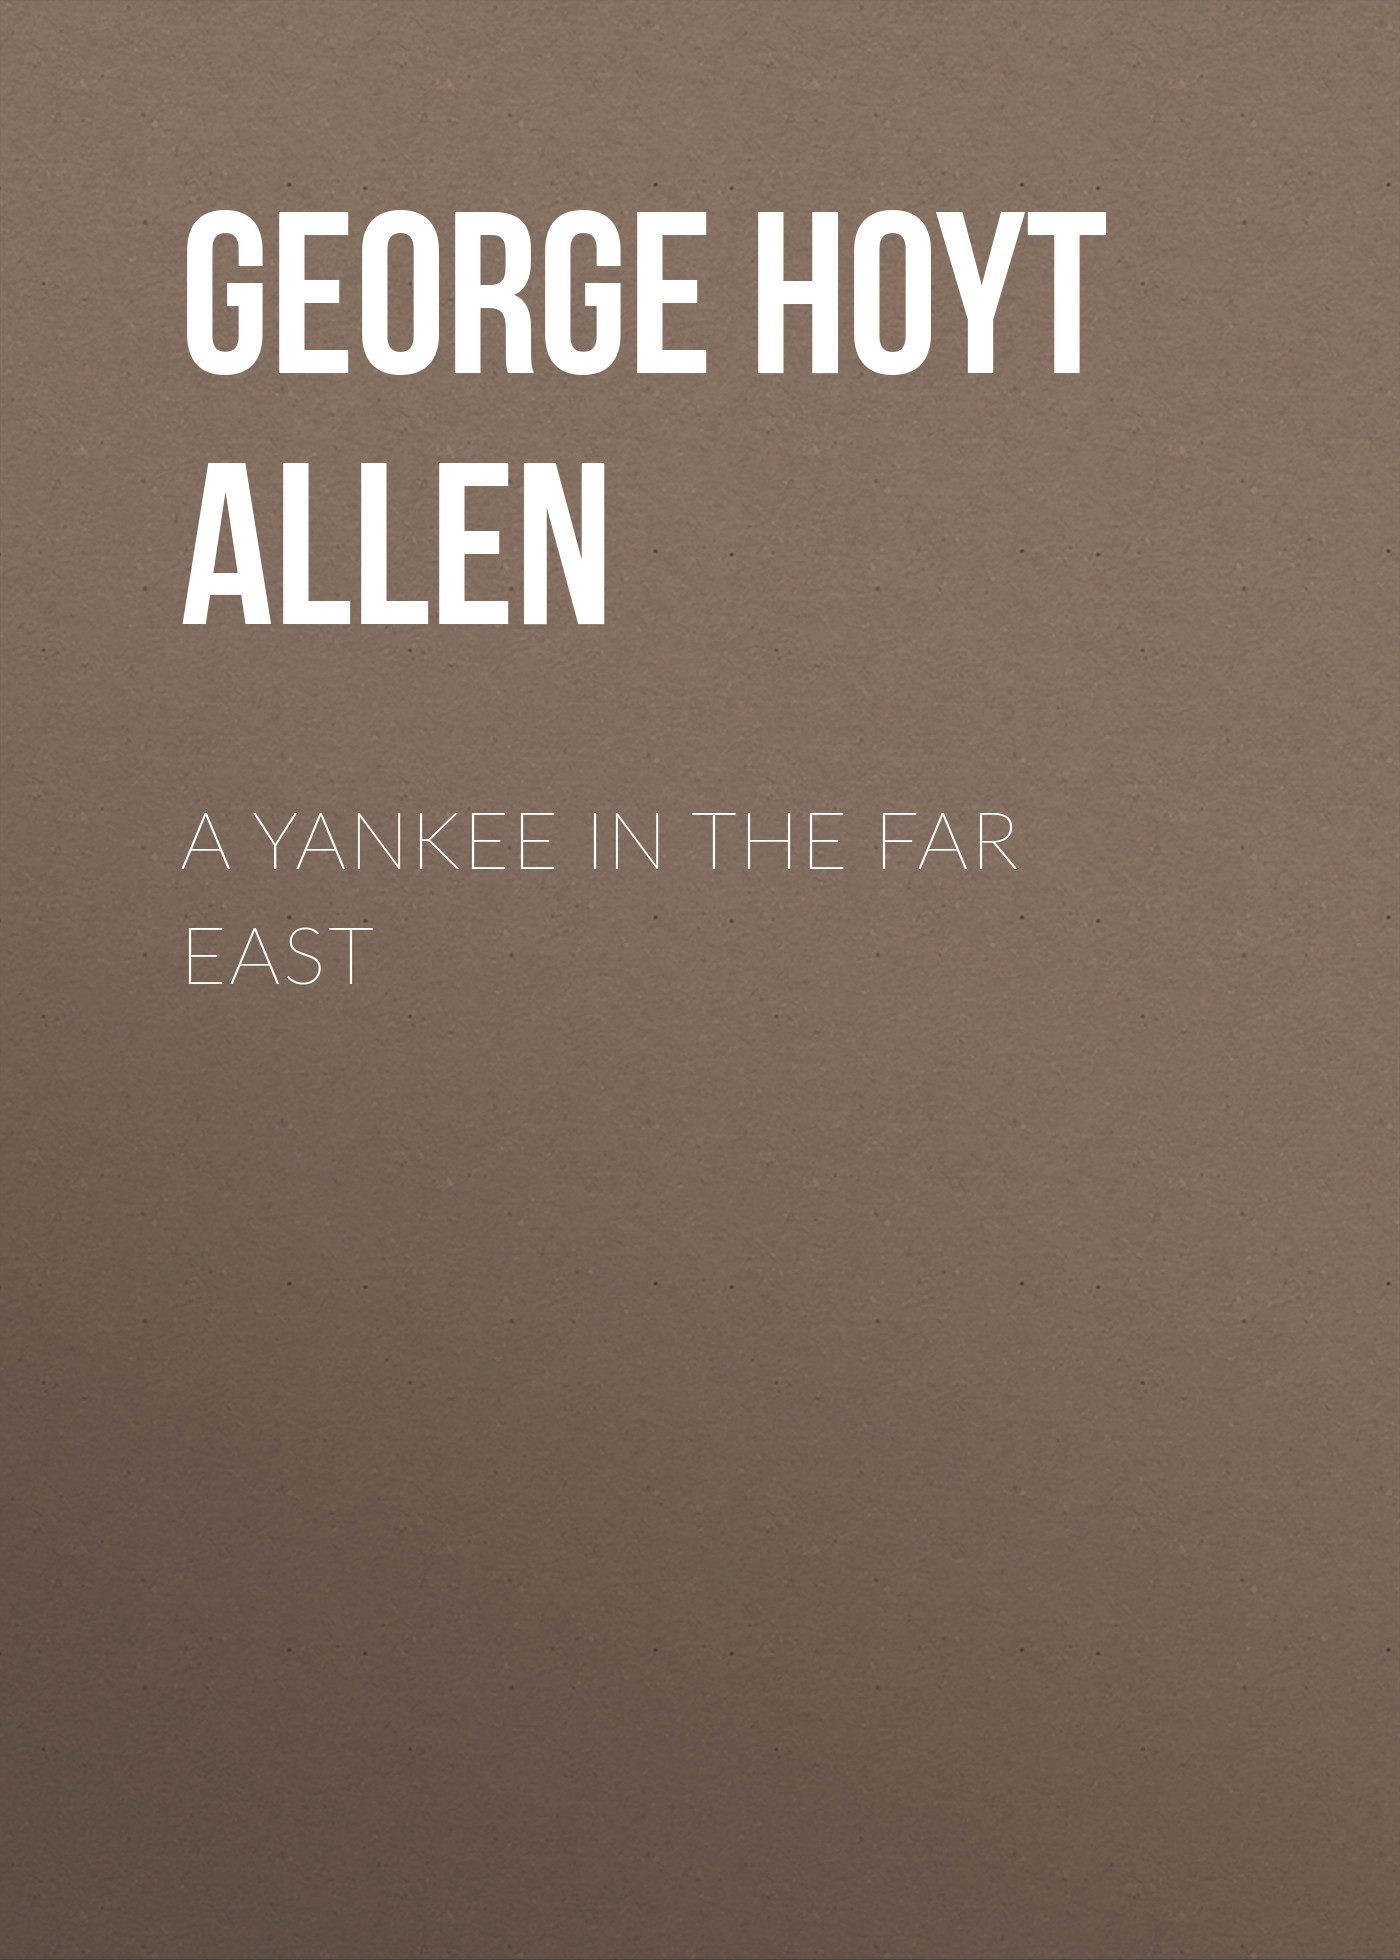 Книга A Yankee in the Far East из серии , созданная George Hoyt Allen, может относится к жанру Зарубежная классика, Зарубежная старинная литература, Иностранные языки. Стоимость электронной книги A Yankee in the Far East с идентификатором 24166660 составляет 0 руб.